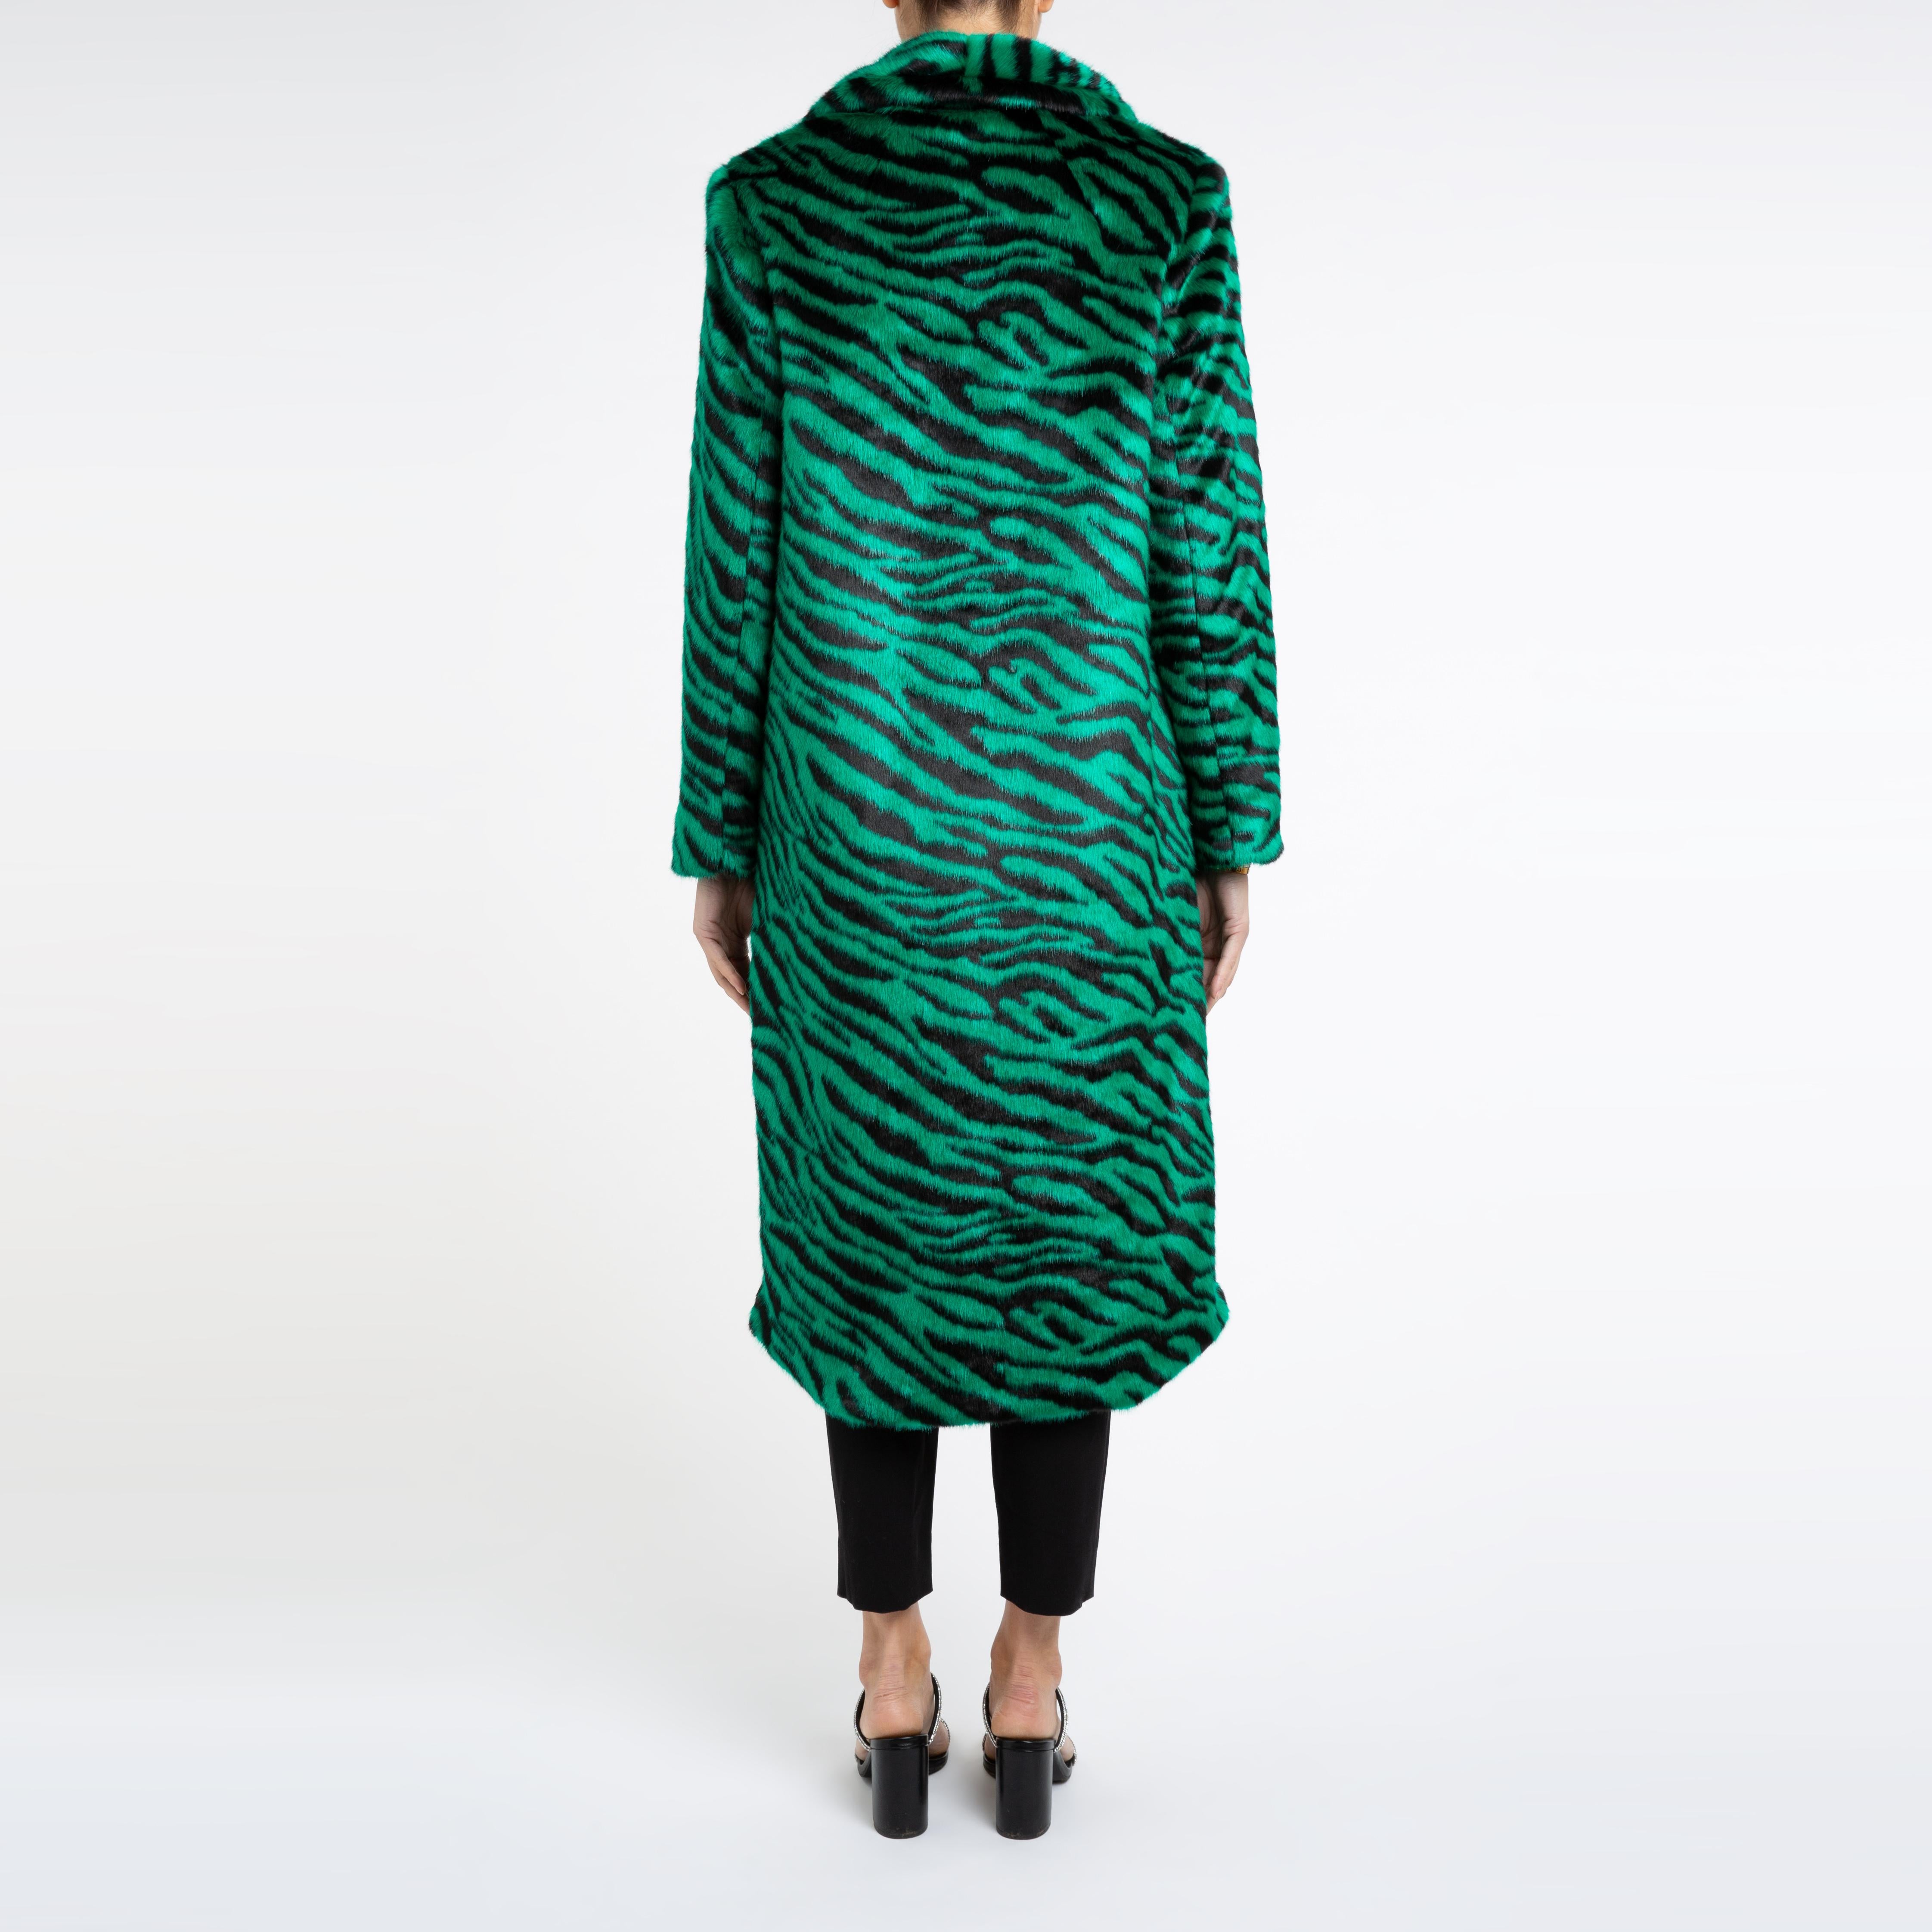 Verheyen London Manteau en fausse fourrure vert émeraude à imprimé zébré Esmeralda, taille UK 12 Pour femmes en vente